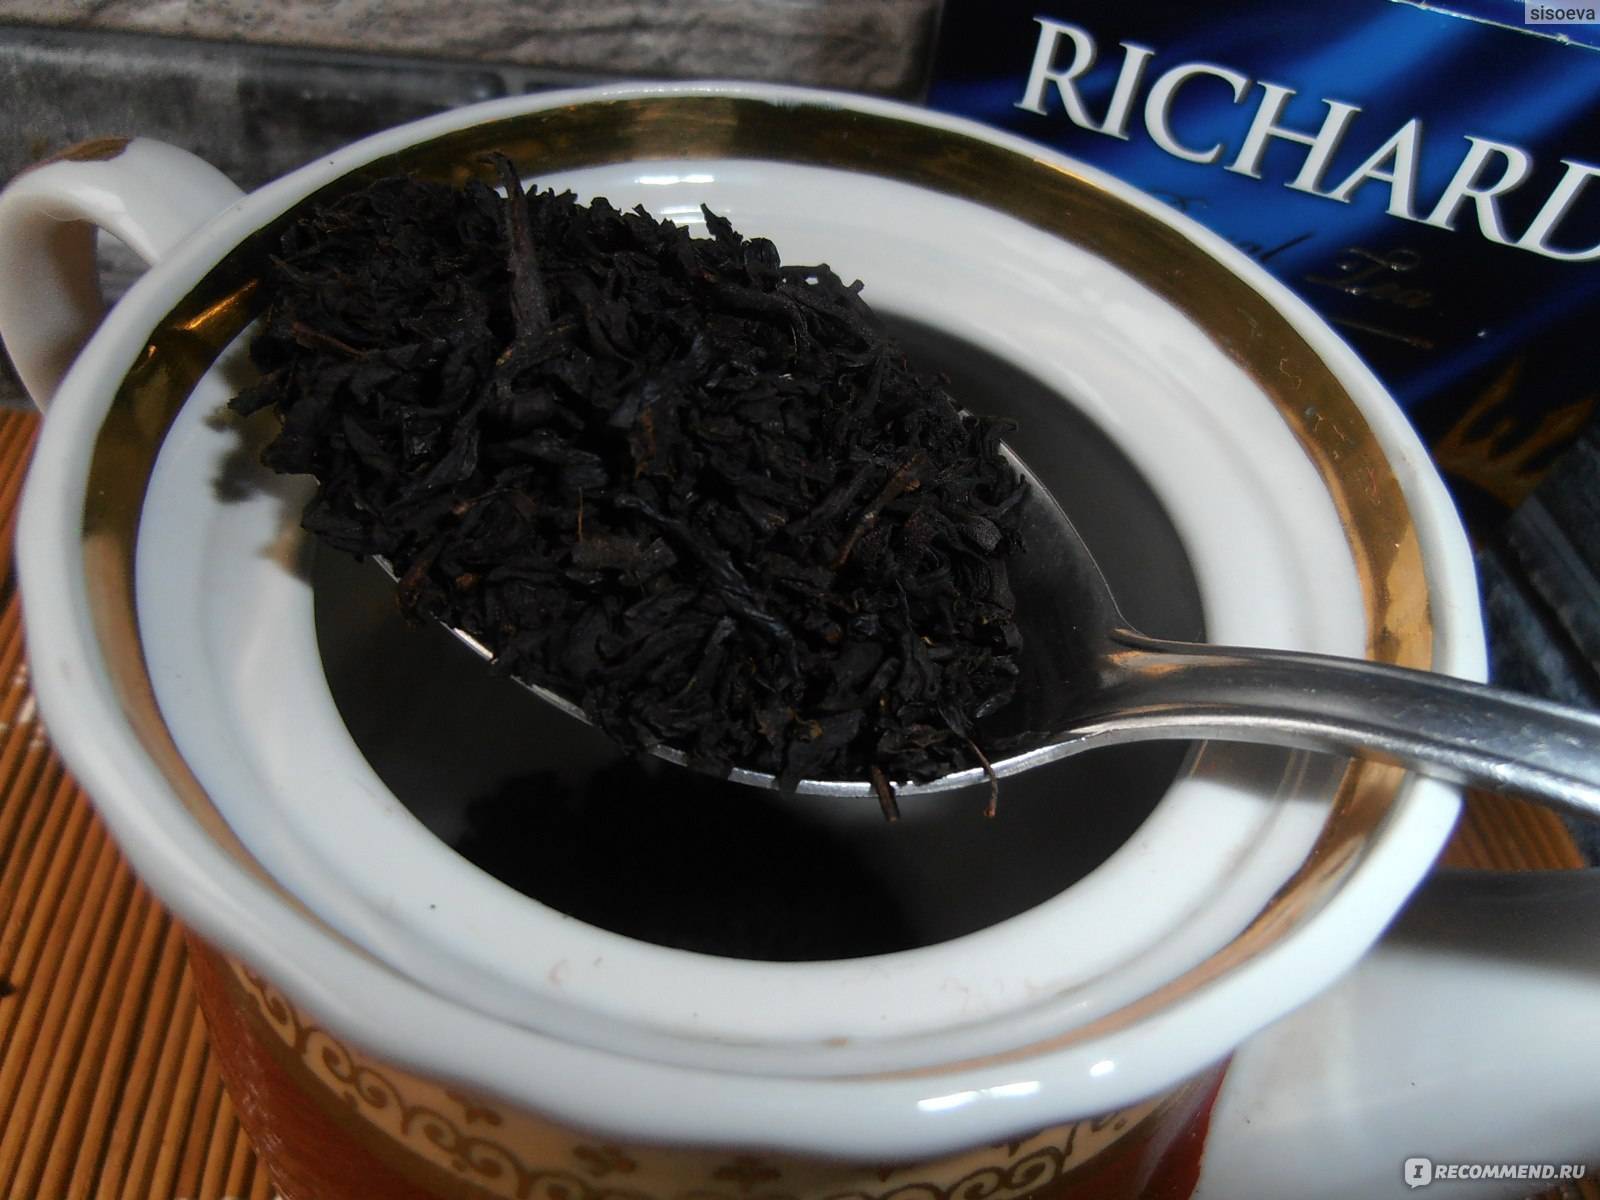 Чай с бергамотом польза и вред - портал обучения и саморазвития